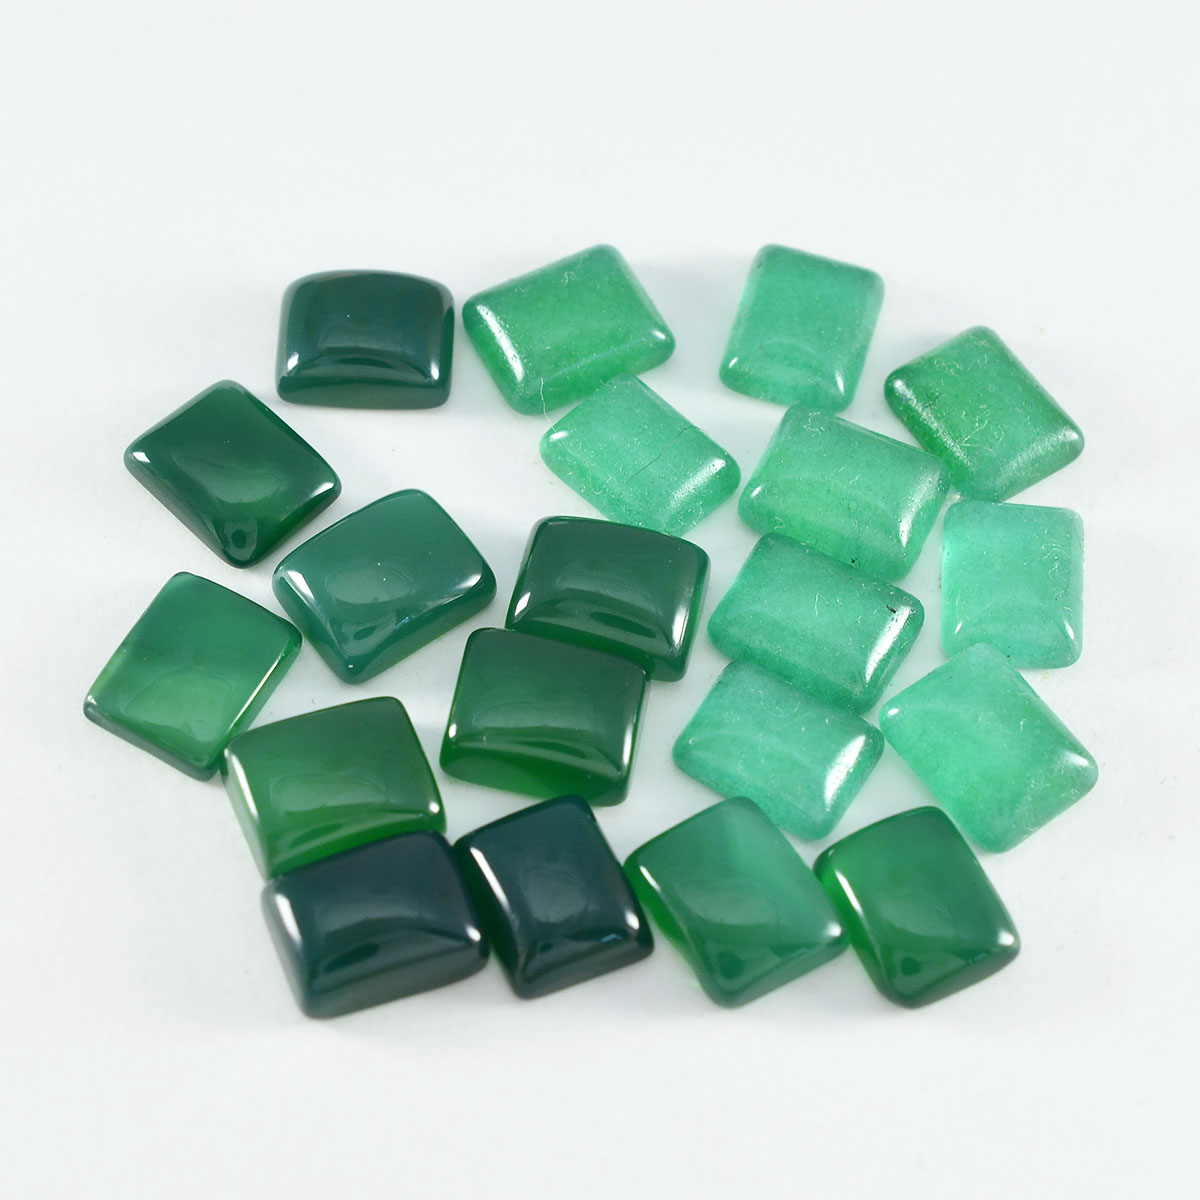 Riyogems 1 Stück grüner Onyx-Cabochon, 6 x 8 mm, achteckige Form, schöne, hochwertige lose Edelsteine